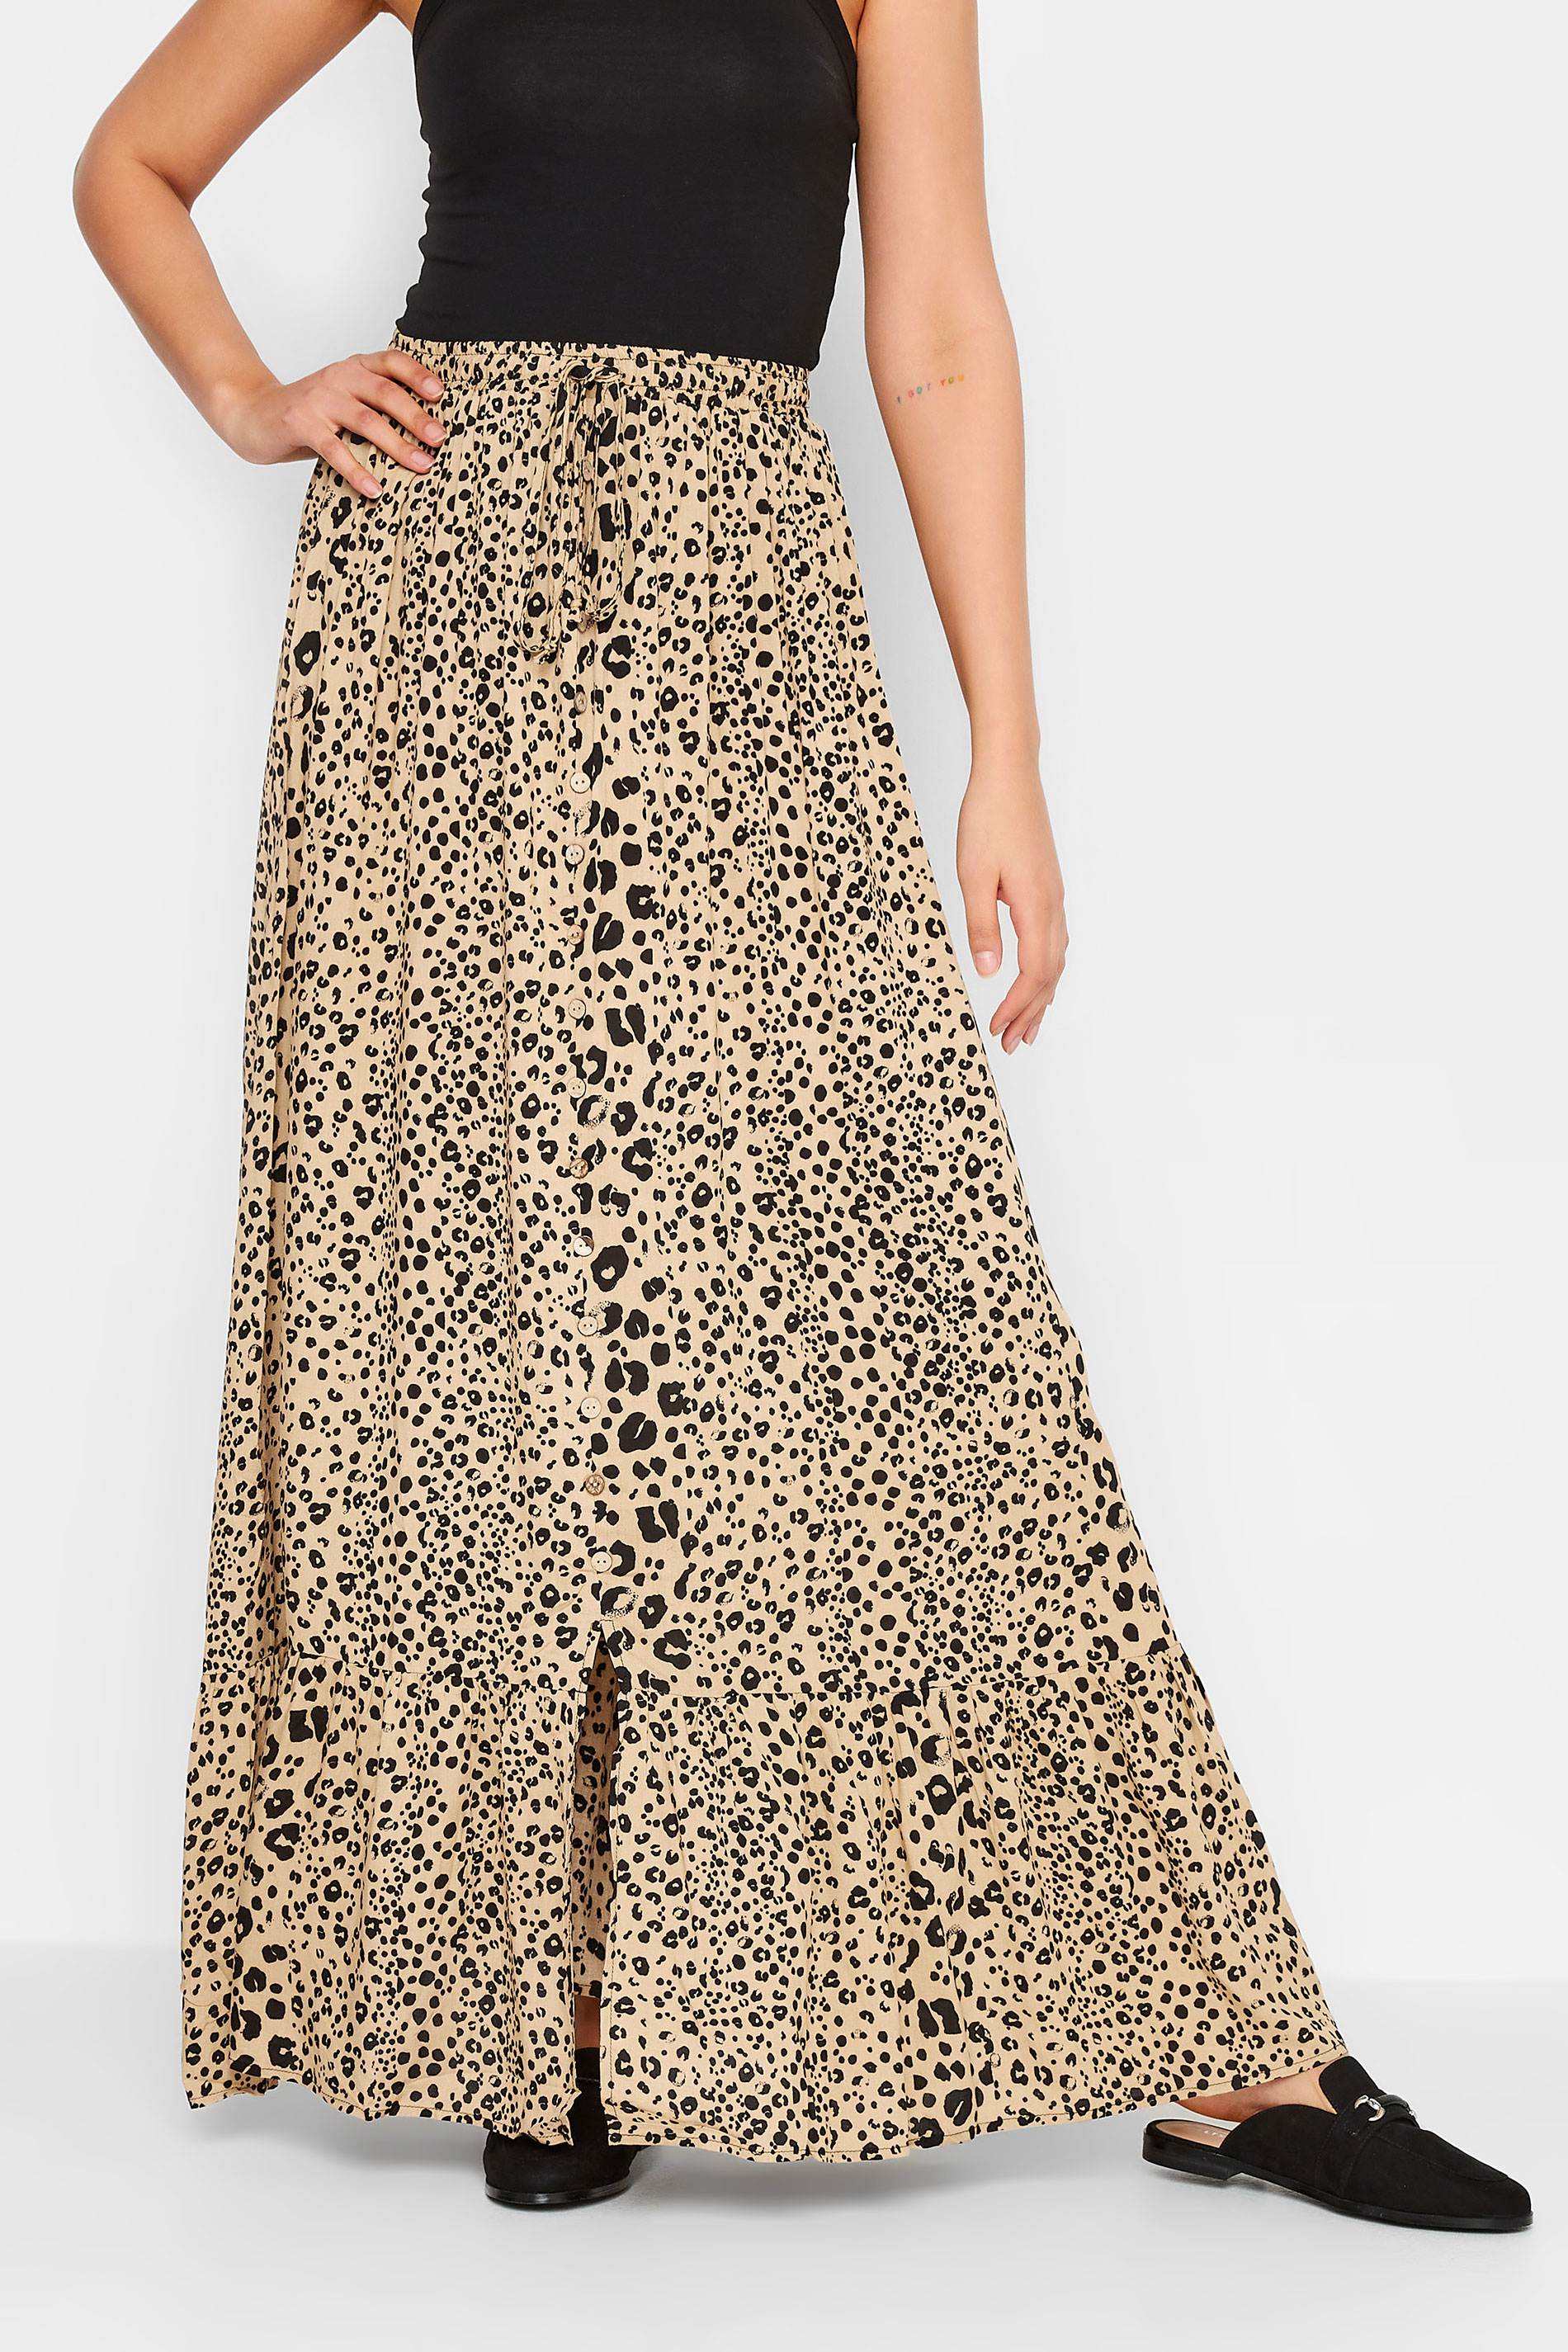 LTS Tall Women's Natural Brown Leopard Print Maxi Skirt | Long Tall Sally